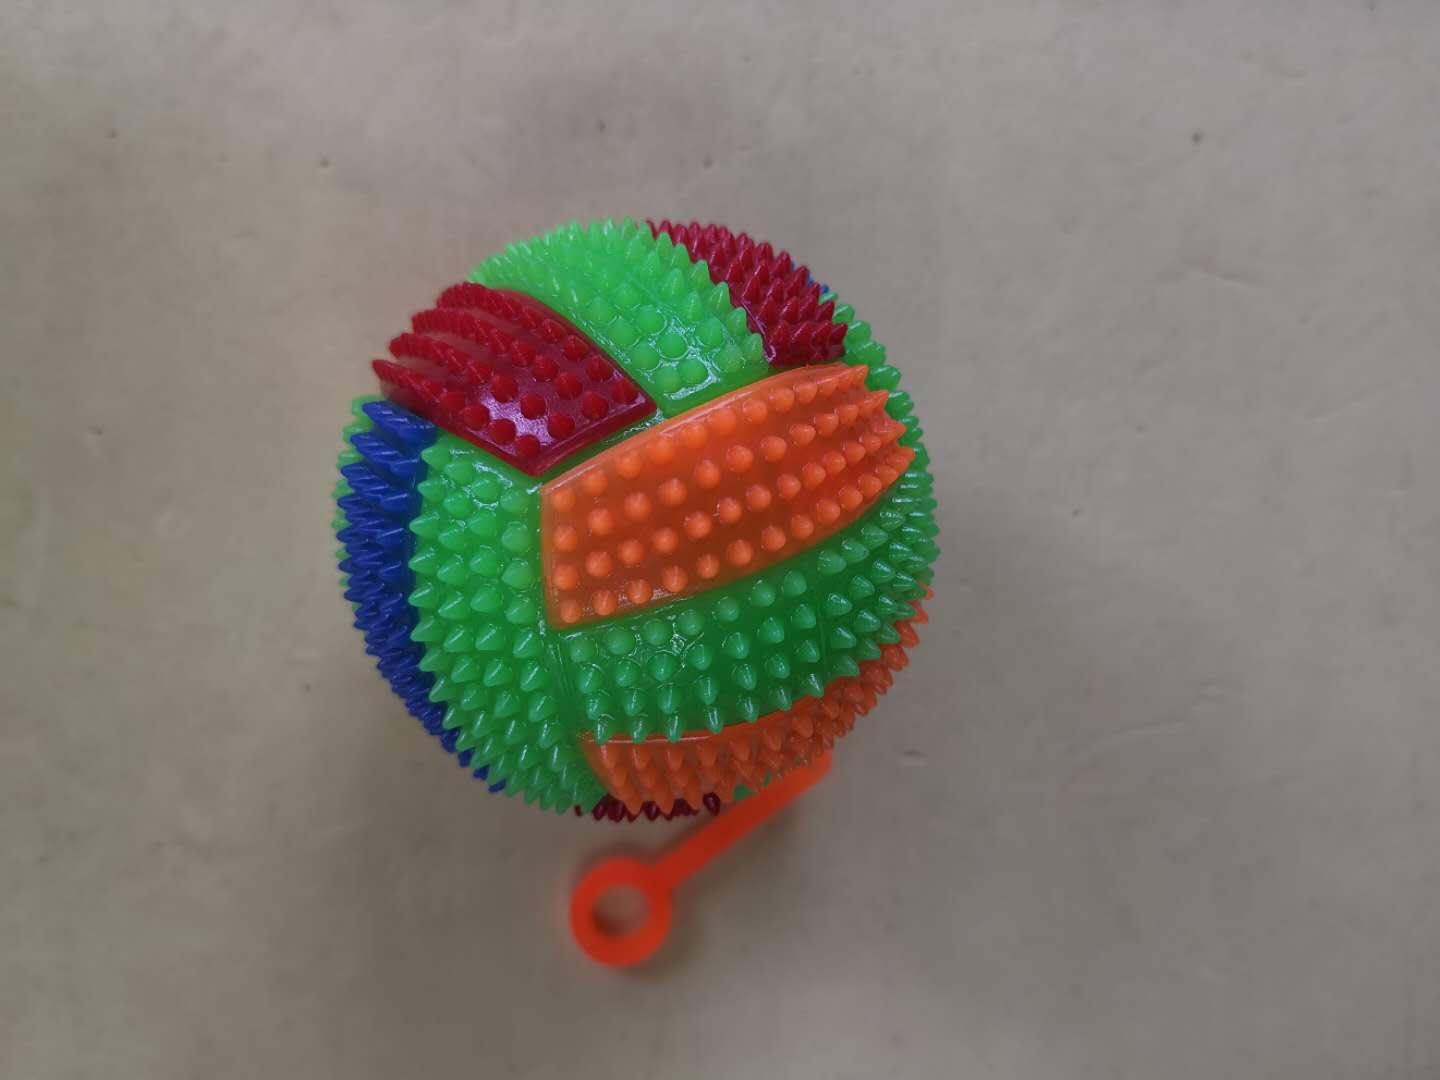 闪光发声排球图案球 闪光发光玩具闪光儿童益智玩具产品图